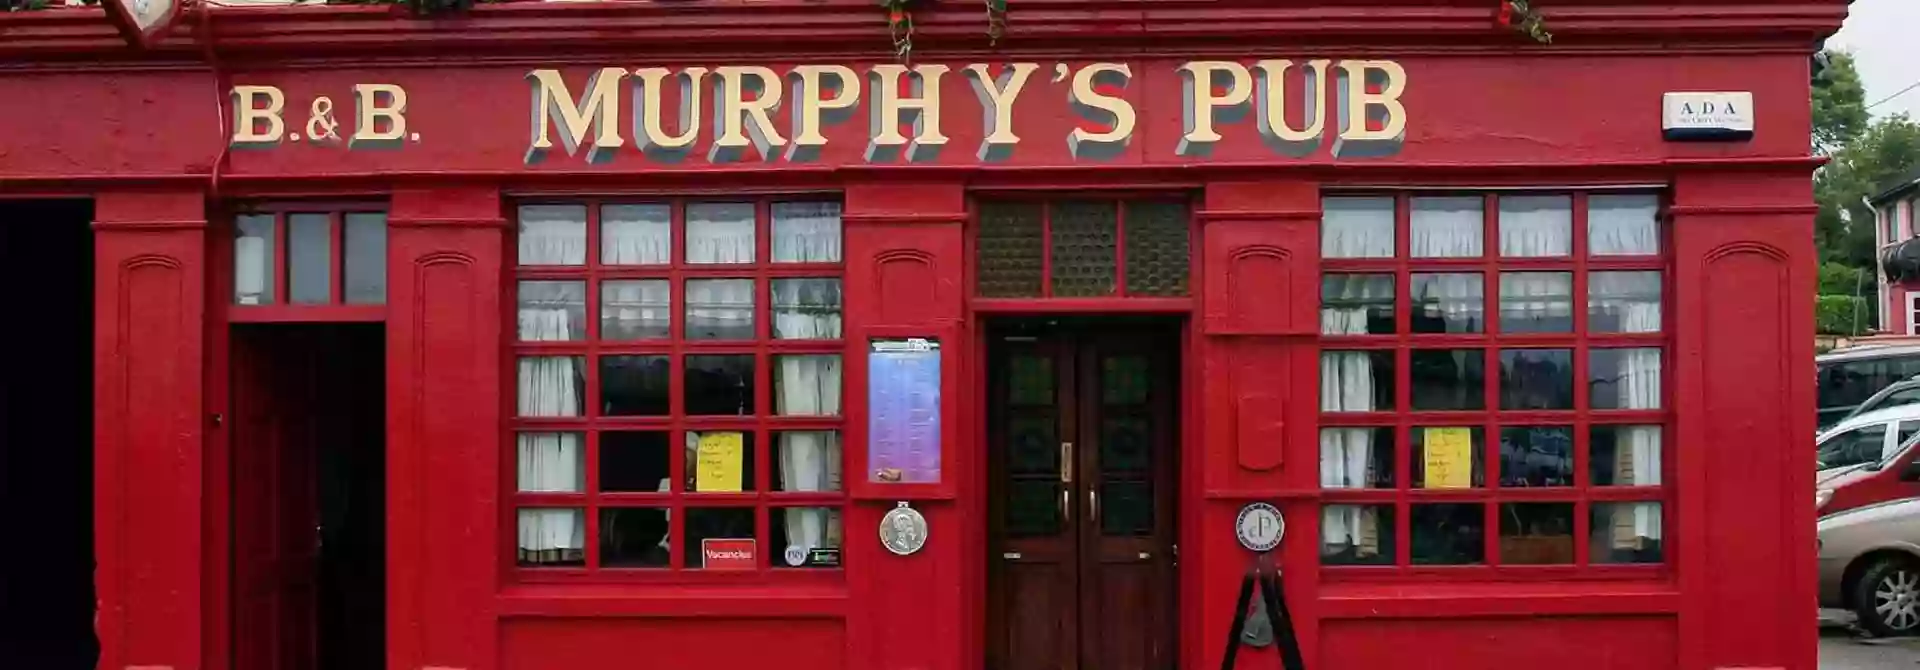 Murphy's Pub, Bed & Breakfast